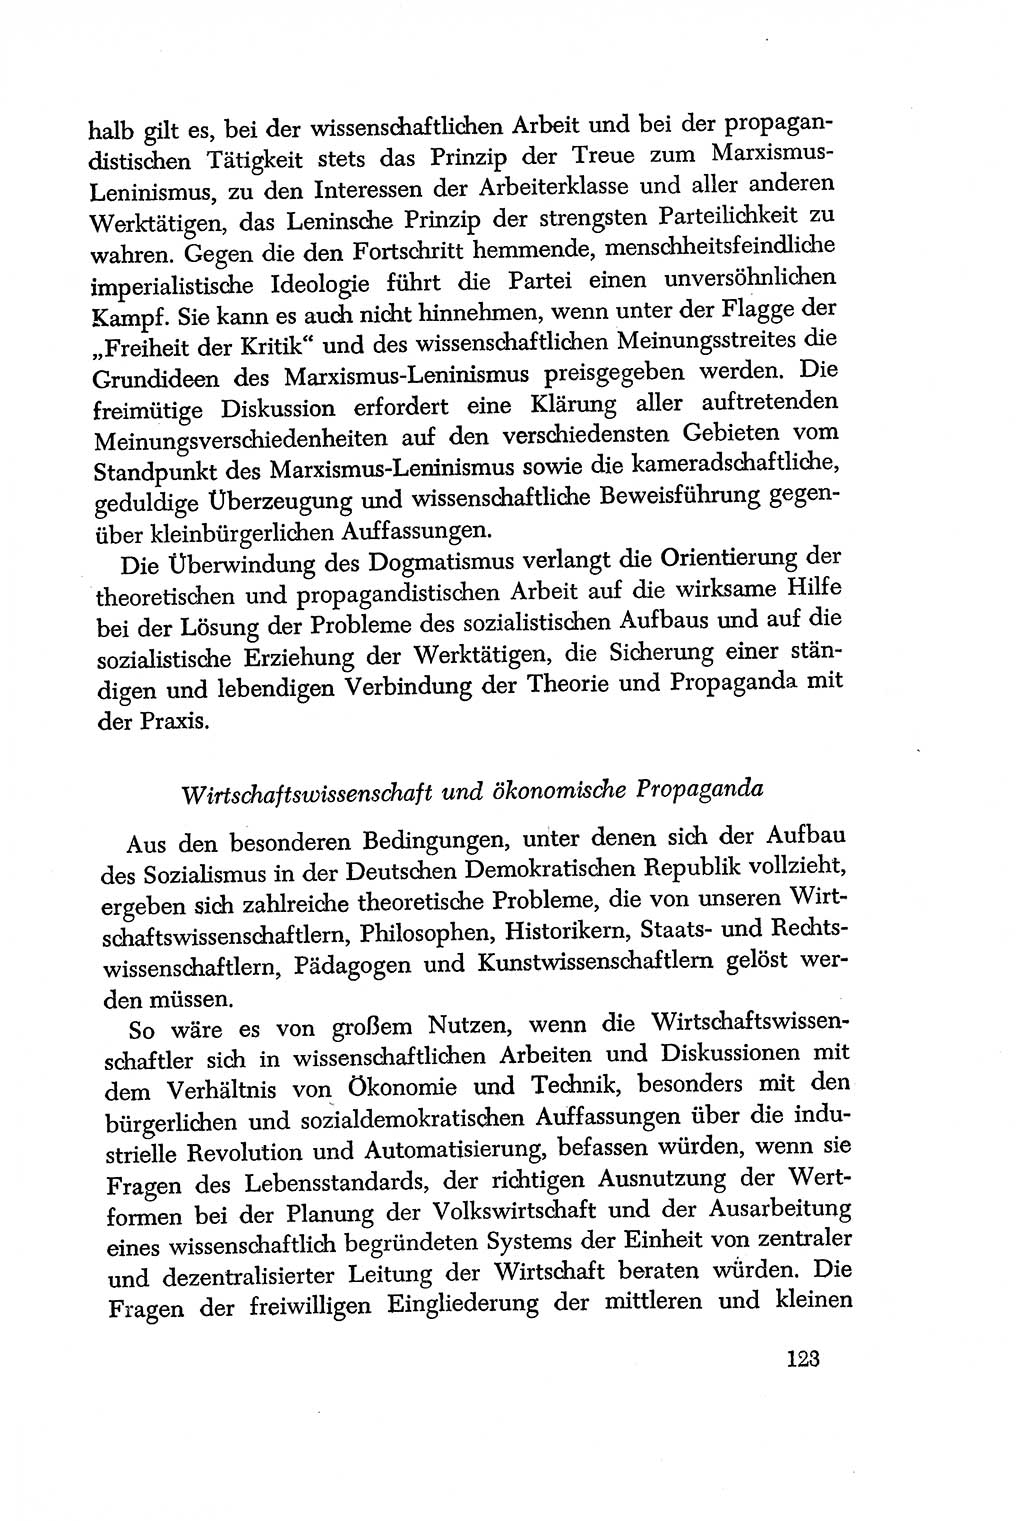 Dokumente der Sozialistischen Einheitspartei Deutschlands (SED) [Deutsche Demokratische Republik (DDR)] 1956-1957, Seite 123 (Dok. SED DDR 1956-1957, S. 123)